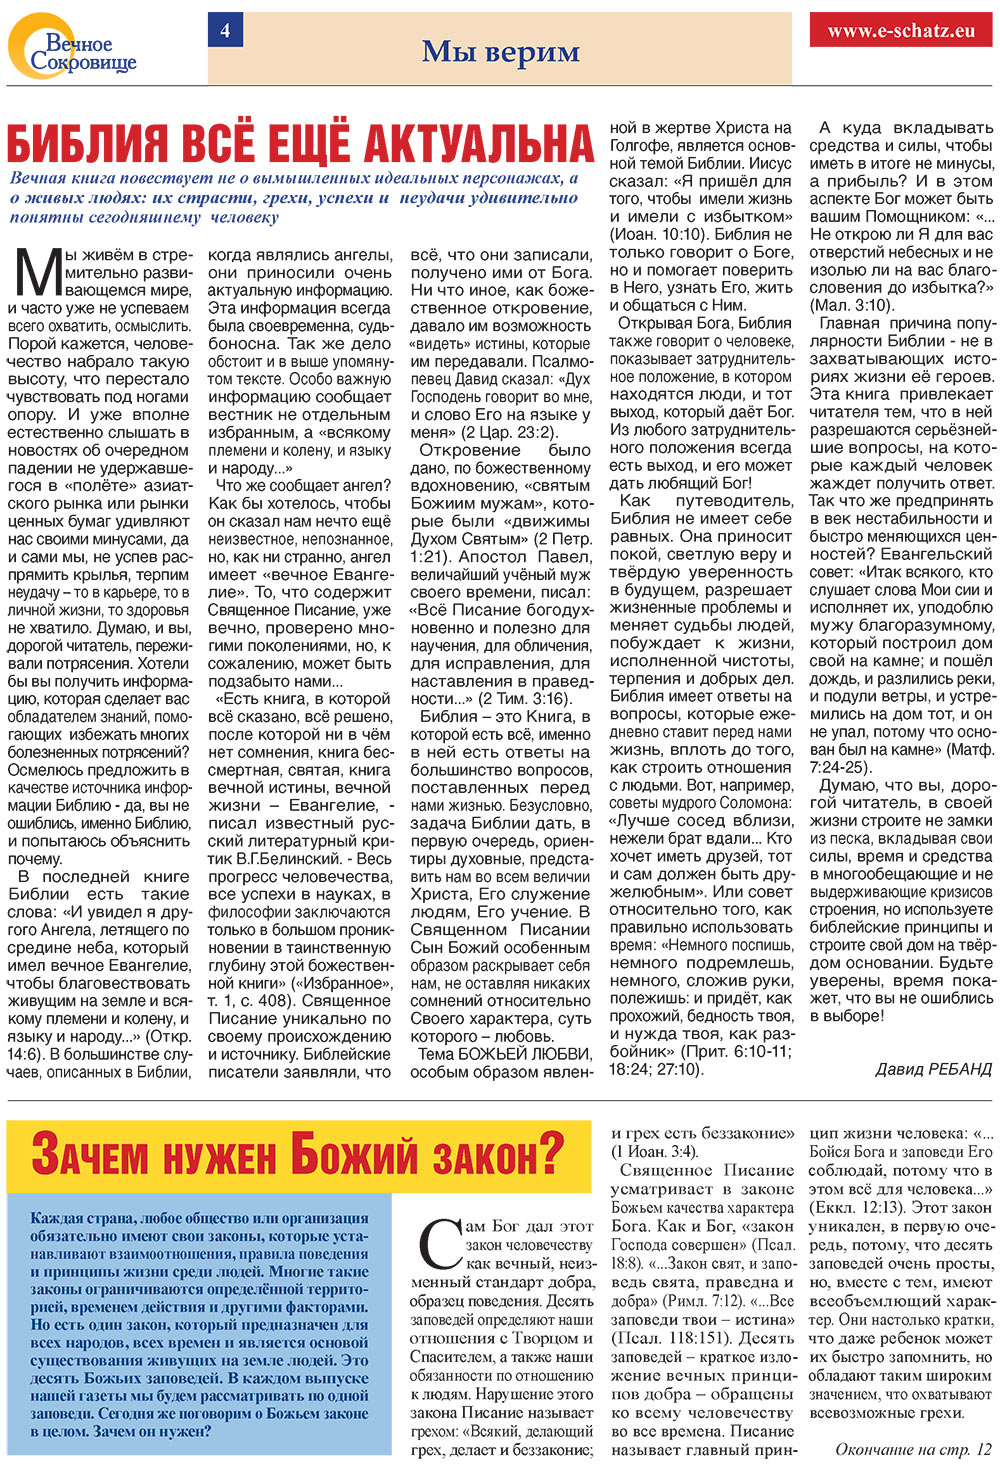 Вечное сокровище, газета. 2008 №4 стр.4